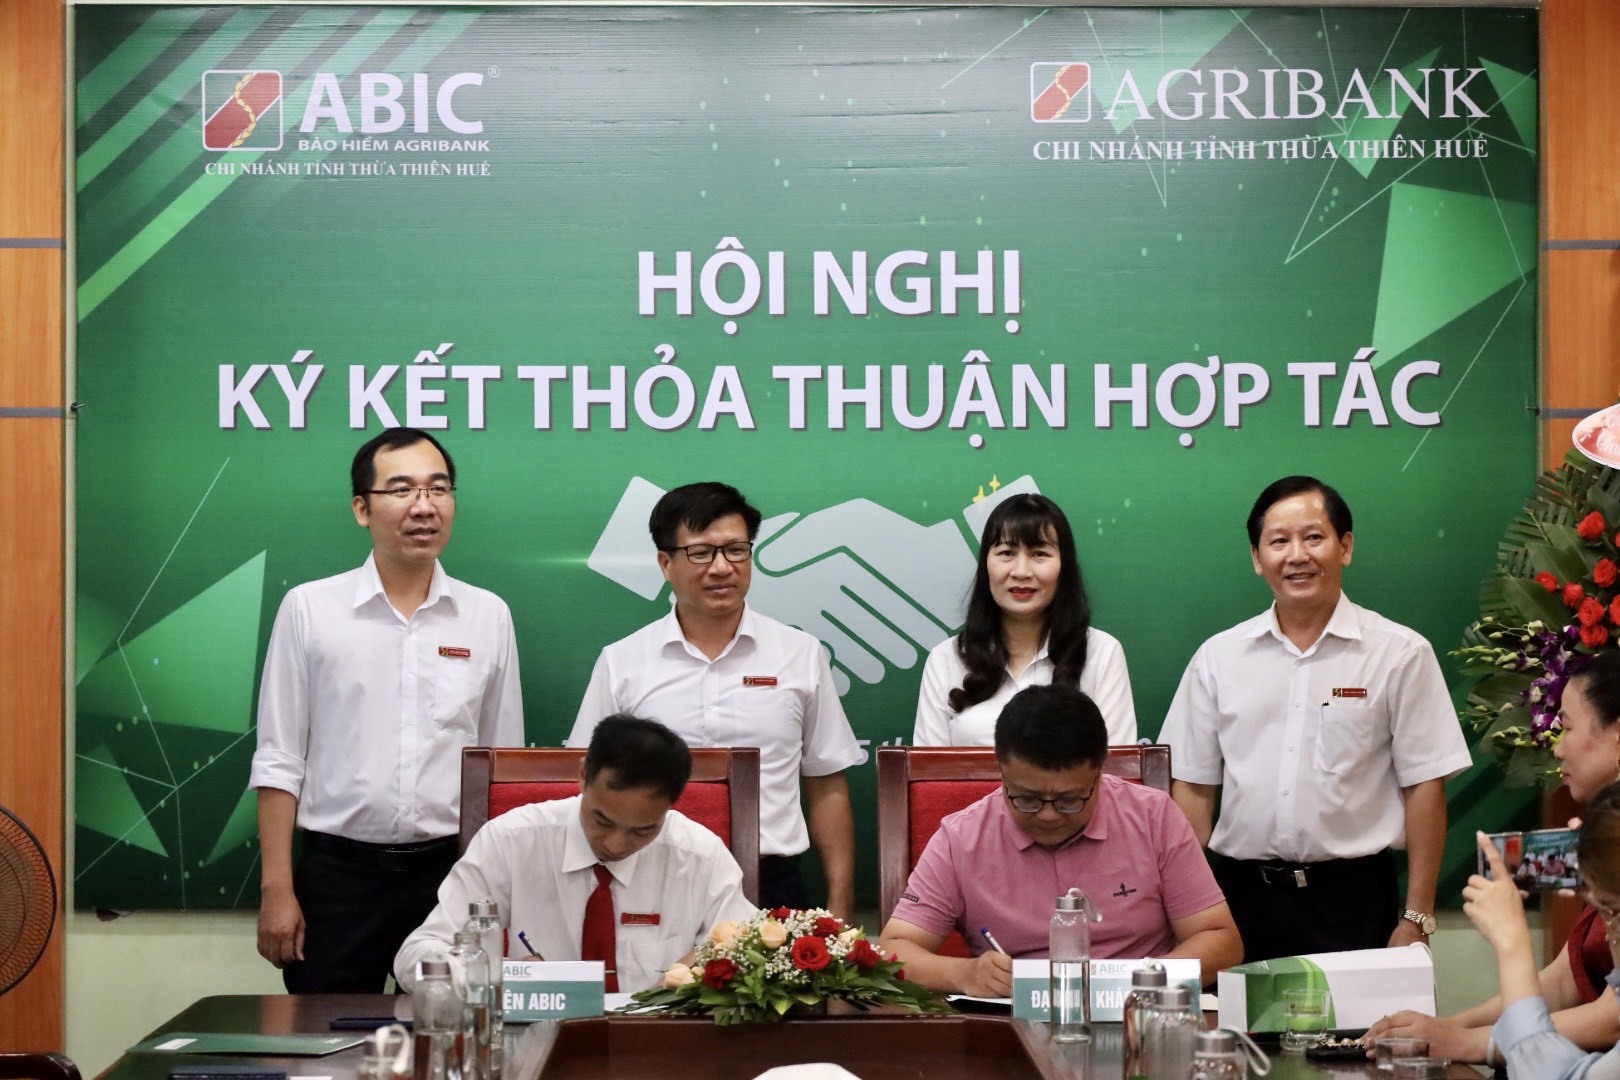 Bảo hiểm Agribank Chi nhánh Thừa Thiên Huế chính thức đi vào hoạt động - Ảnh 4.